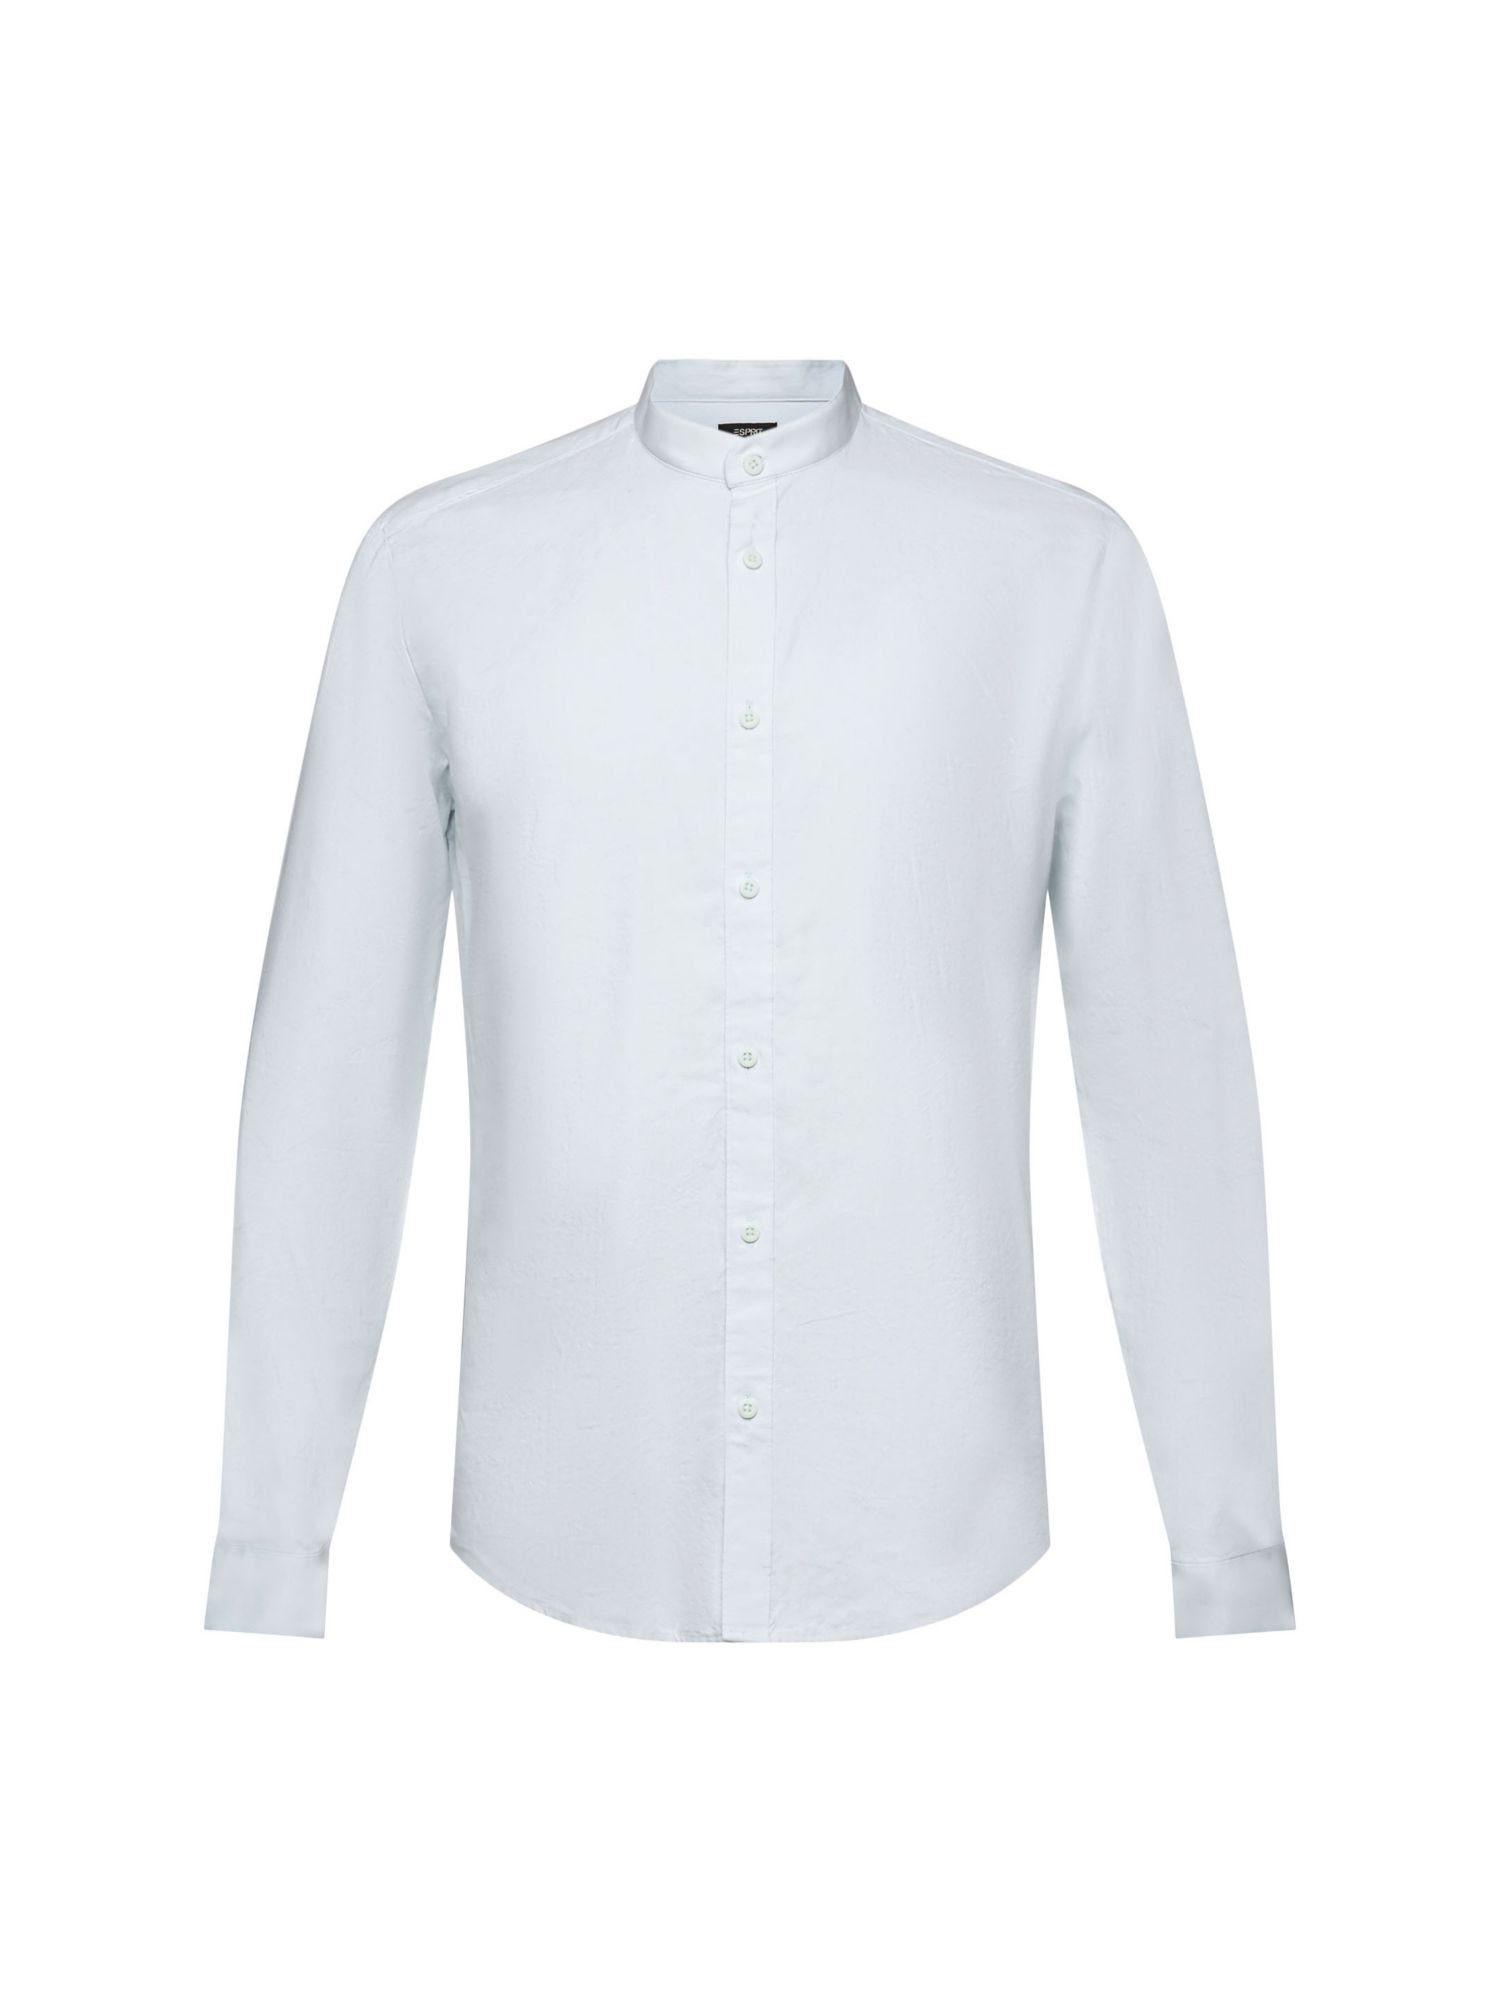 Esprit Collection Businesshemd Hemd in schmaler Passform mit Stehkragen